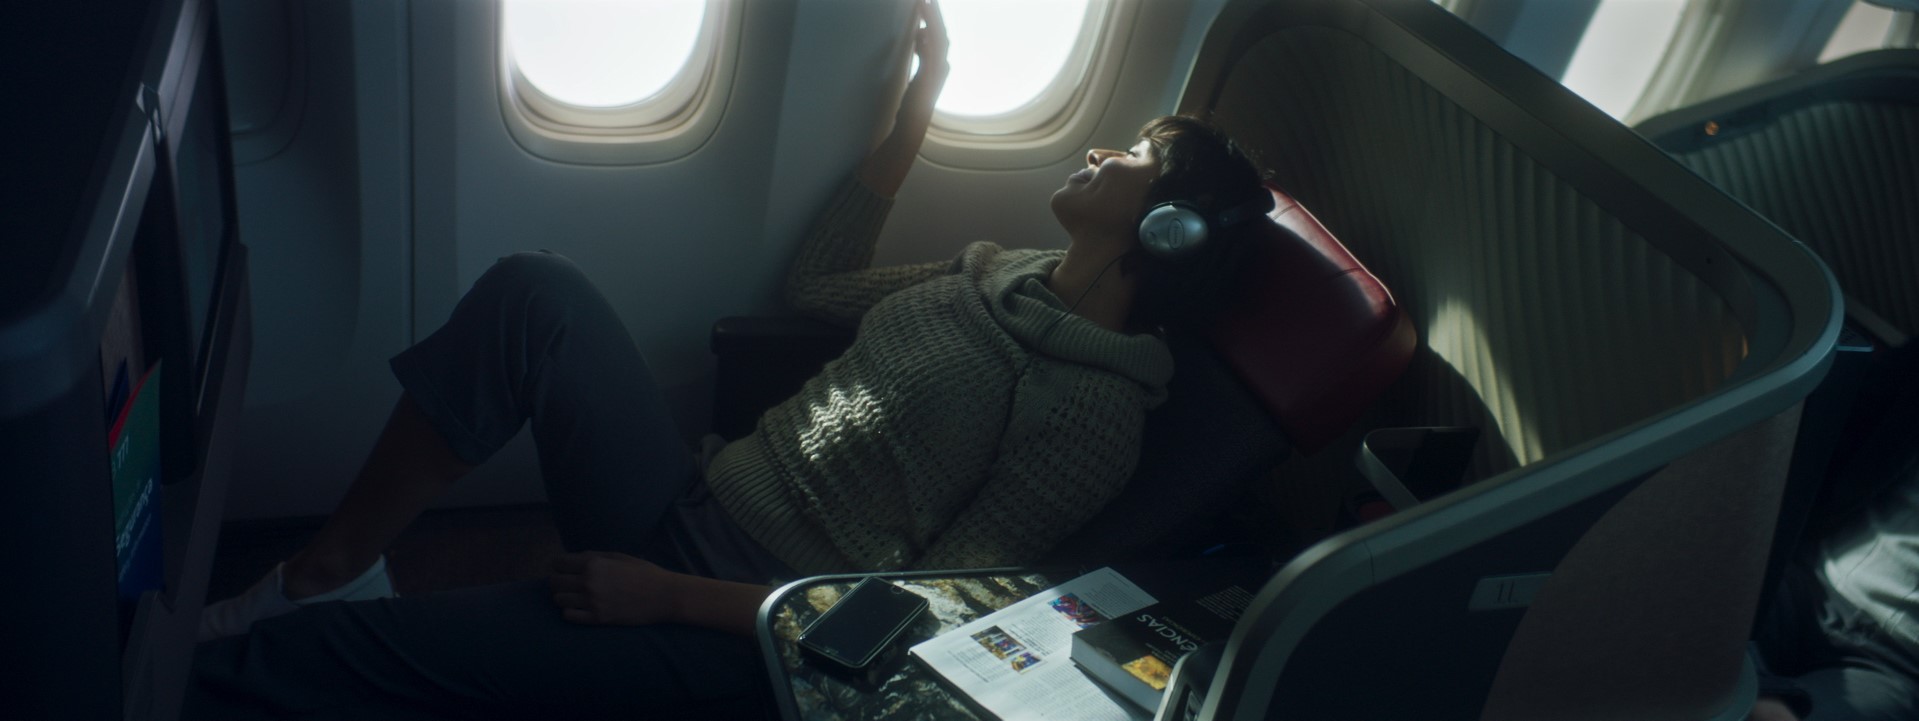 Mulher usando fone de ouvido sentada em cadeira de avião durante um voo.